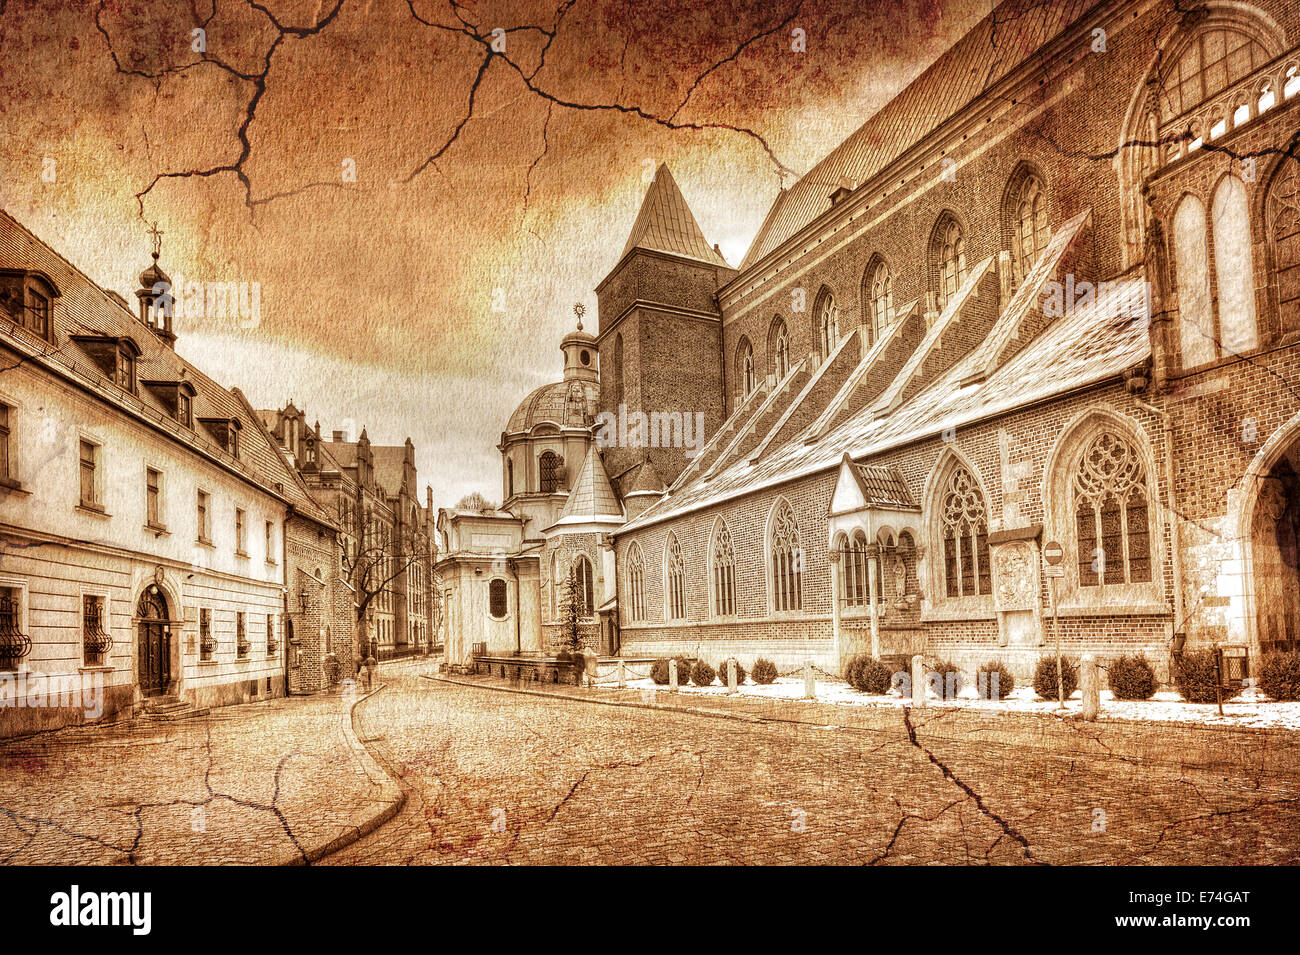 Les rues de l'île de la cathédrale en style retro Wroclaw, Pologne. Banque D'Images